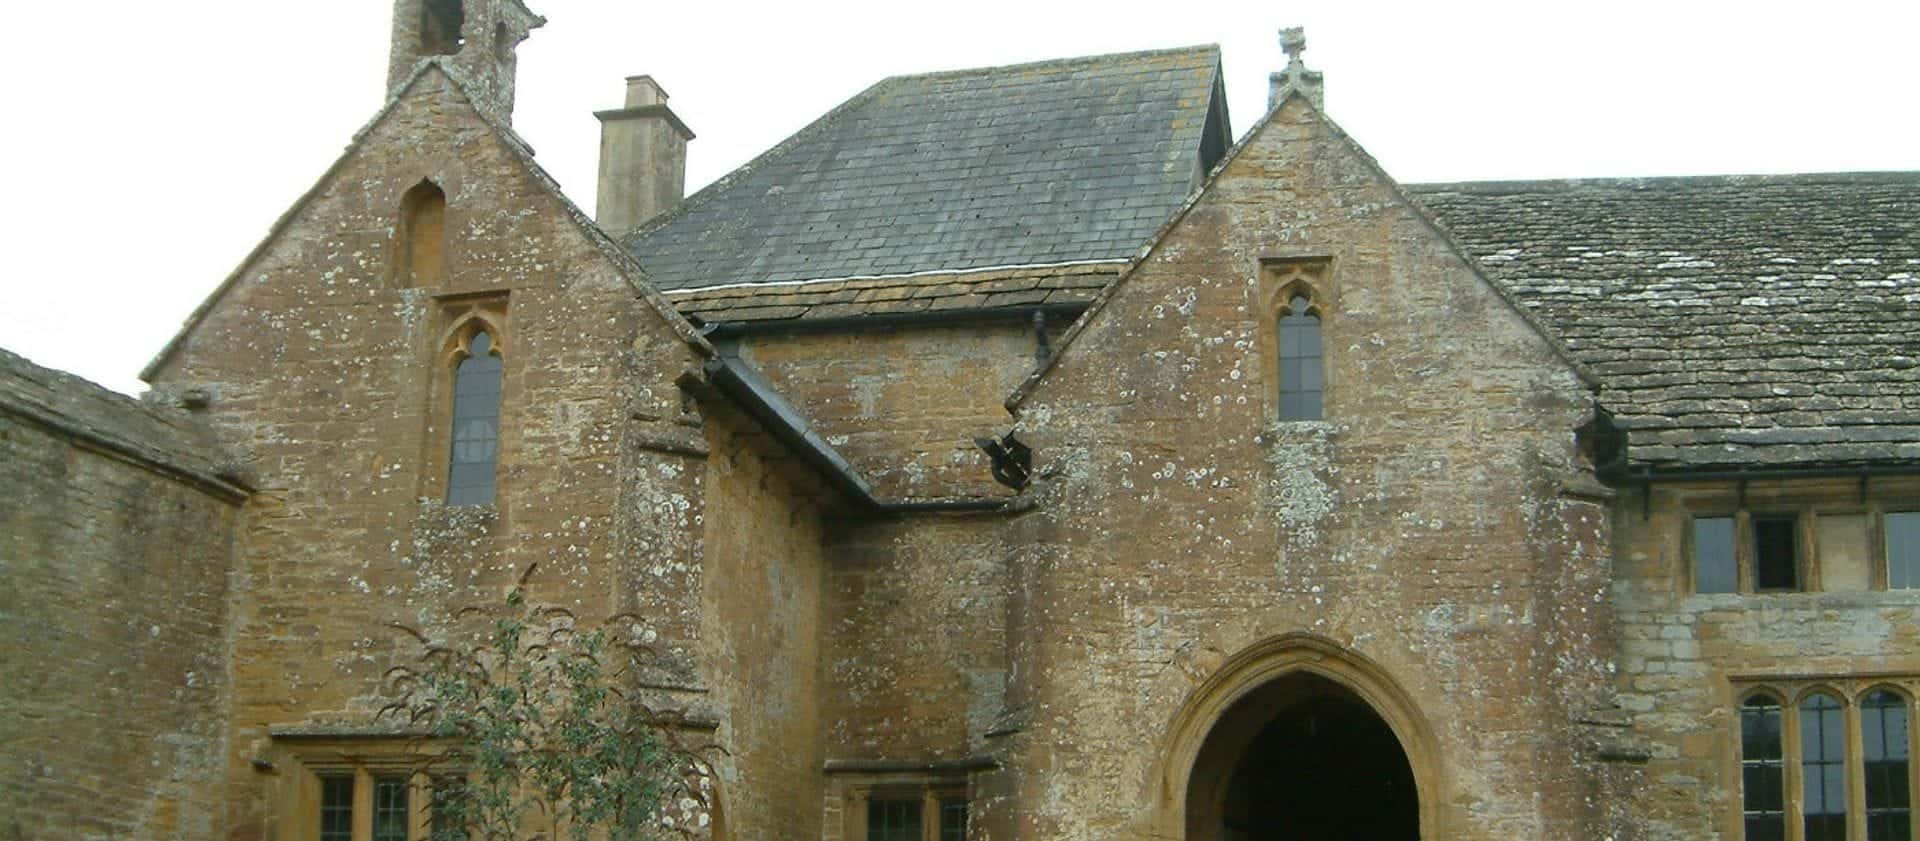 Stoke-sub-Hamdon Priory in UK